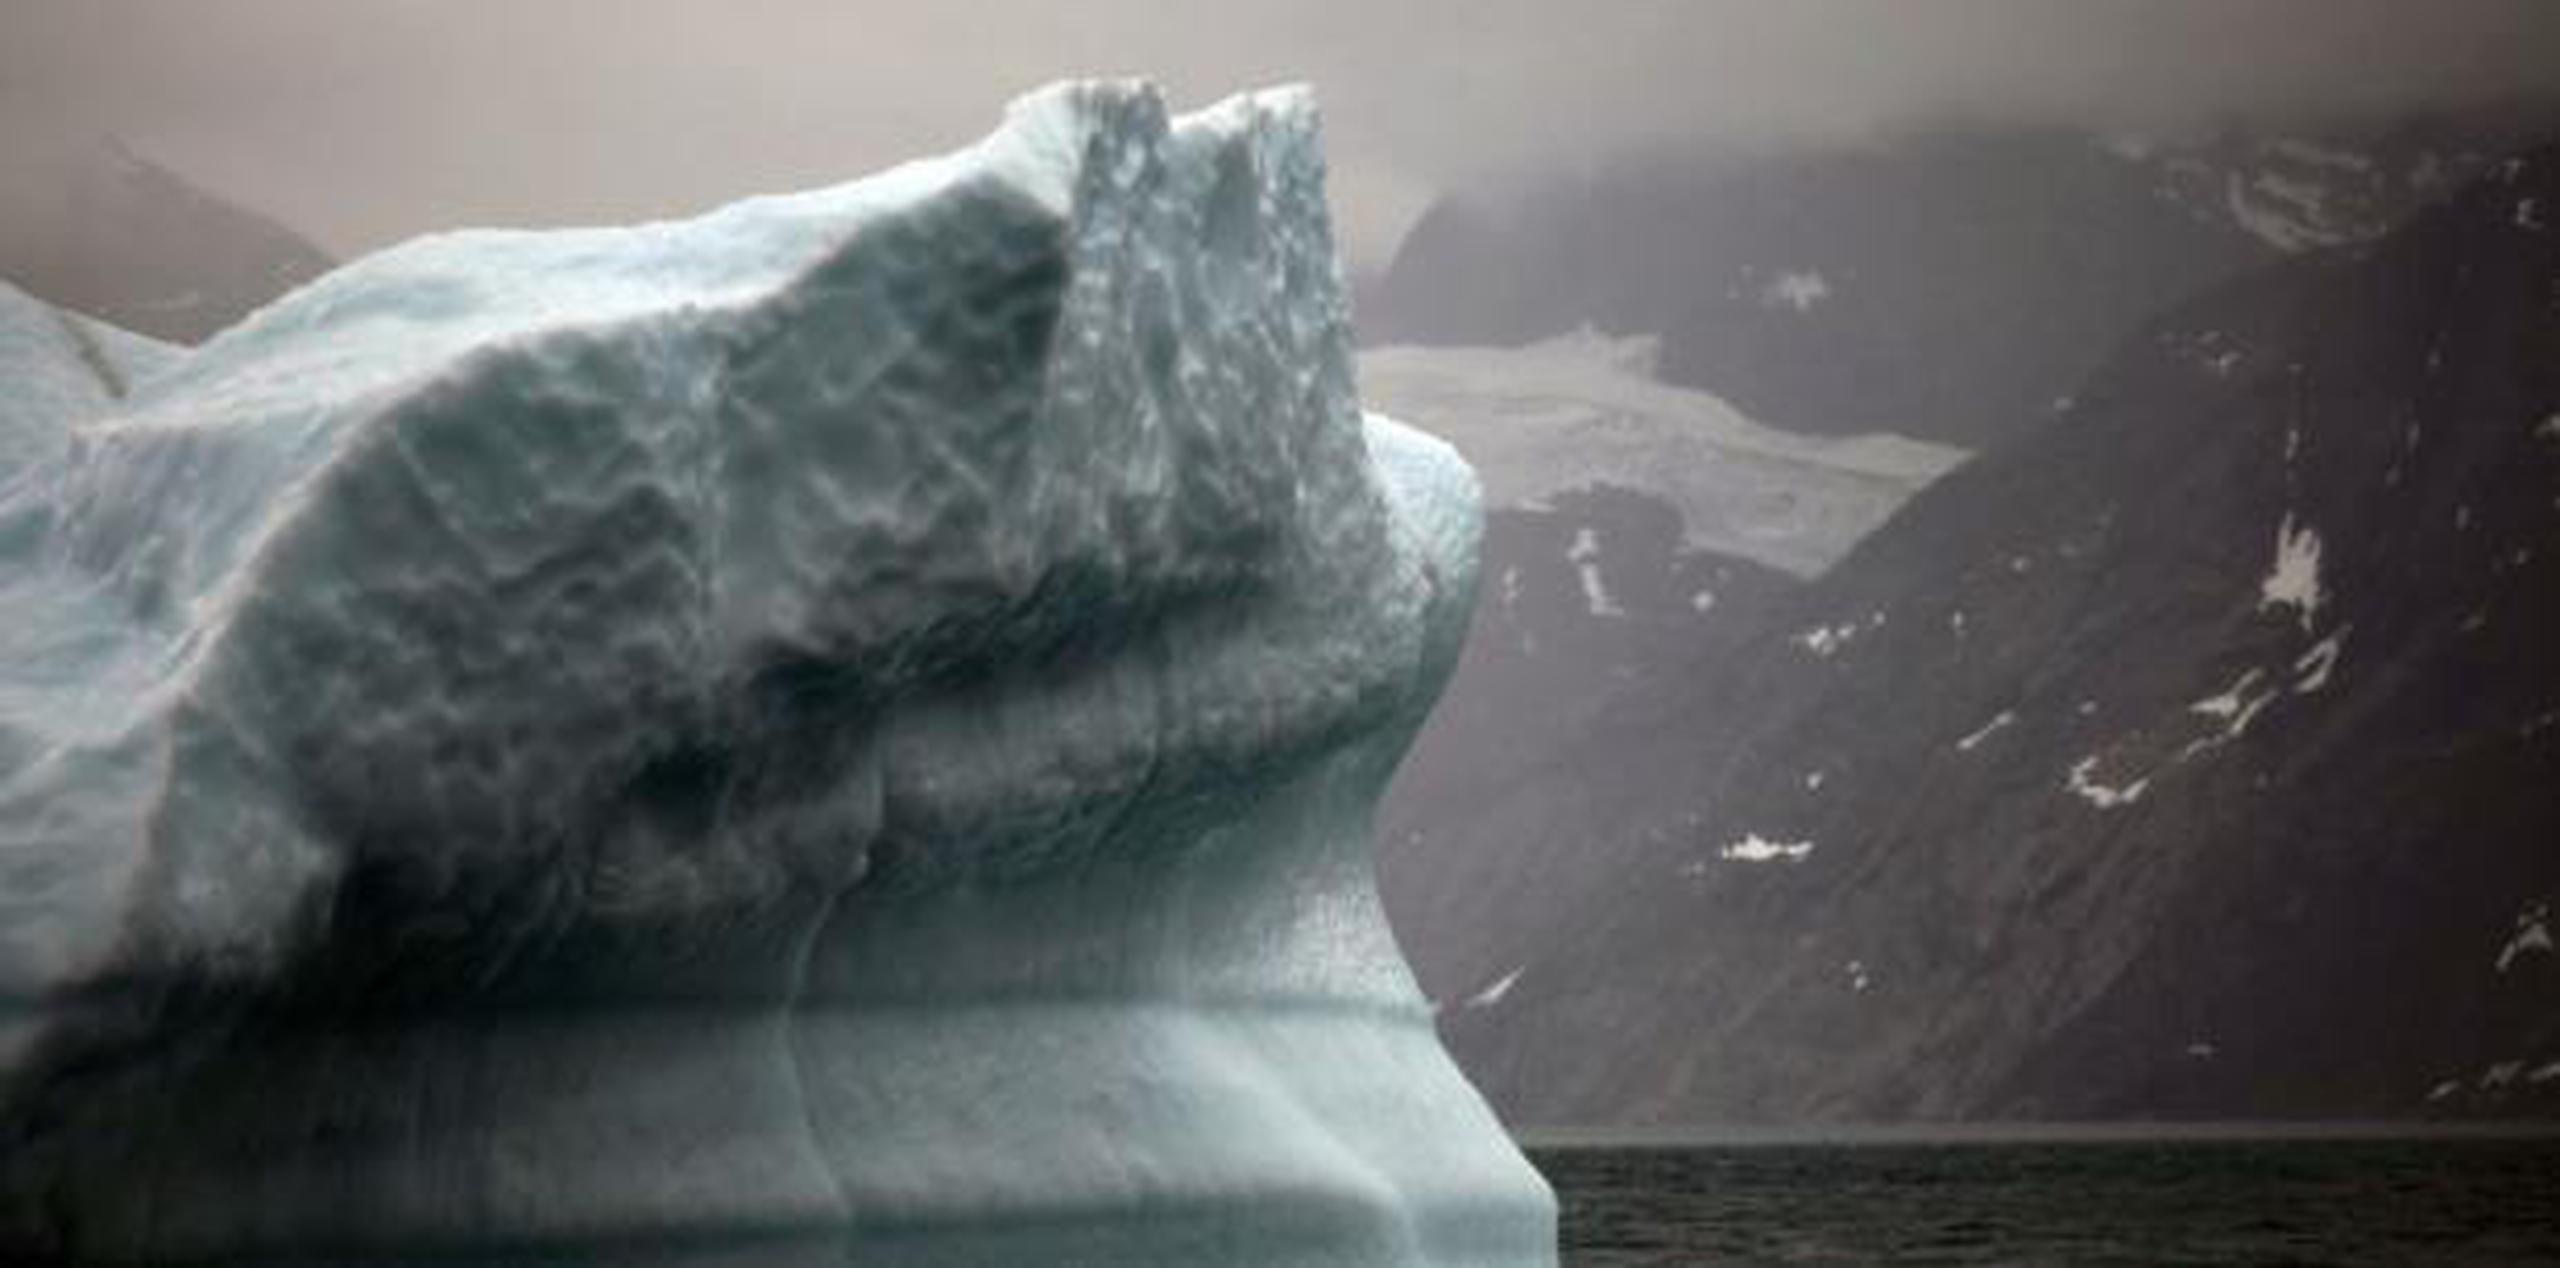 El trabajo permite comprender mejor el verdadero impacto del clima sobre el Ártico. (AP)
